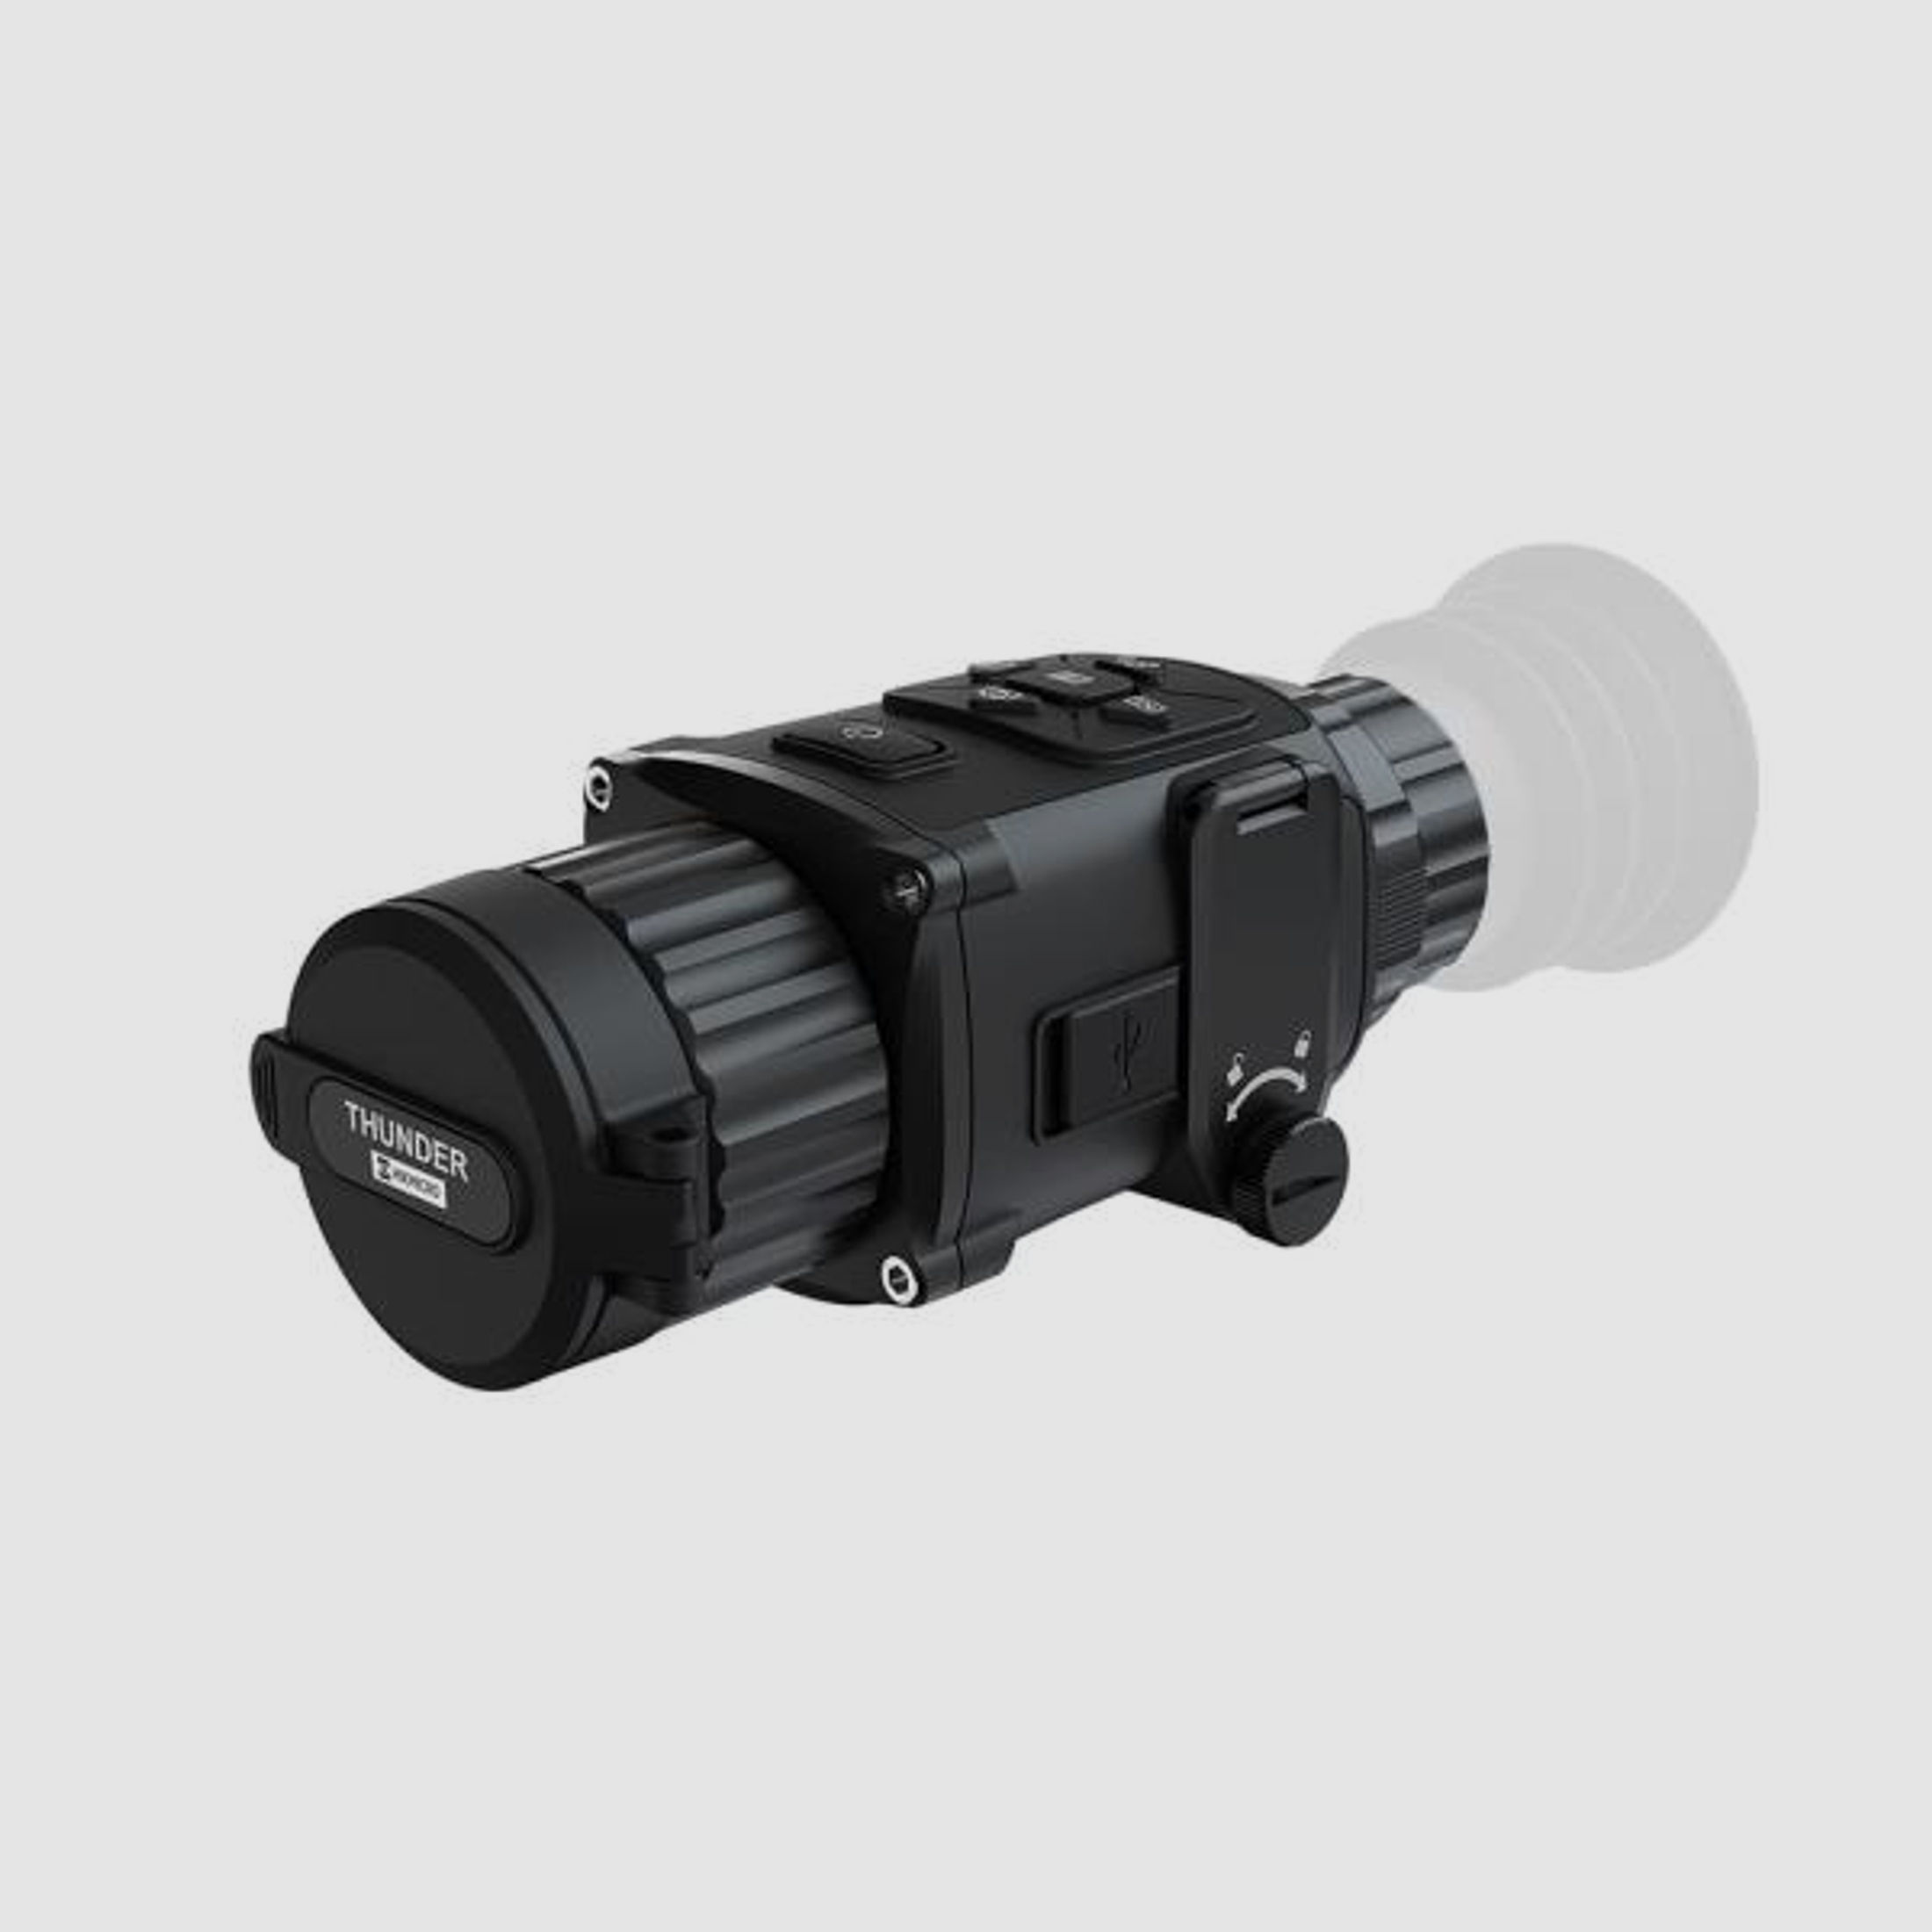 hikmicro Wärmebild-Kamera TE19C Dual-Use-Vorsatzgerät